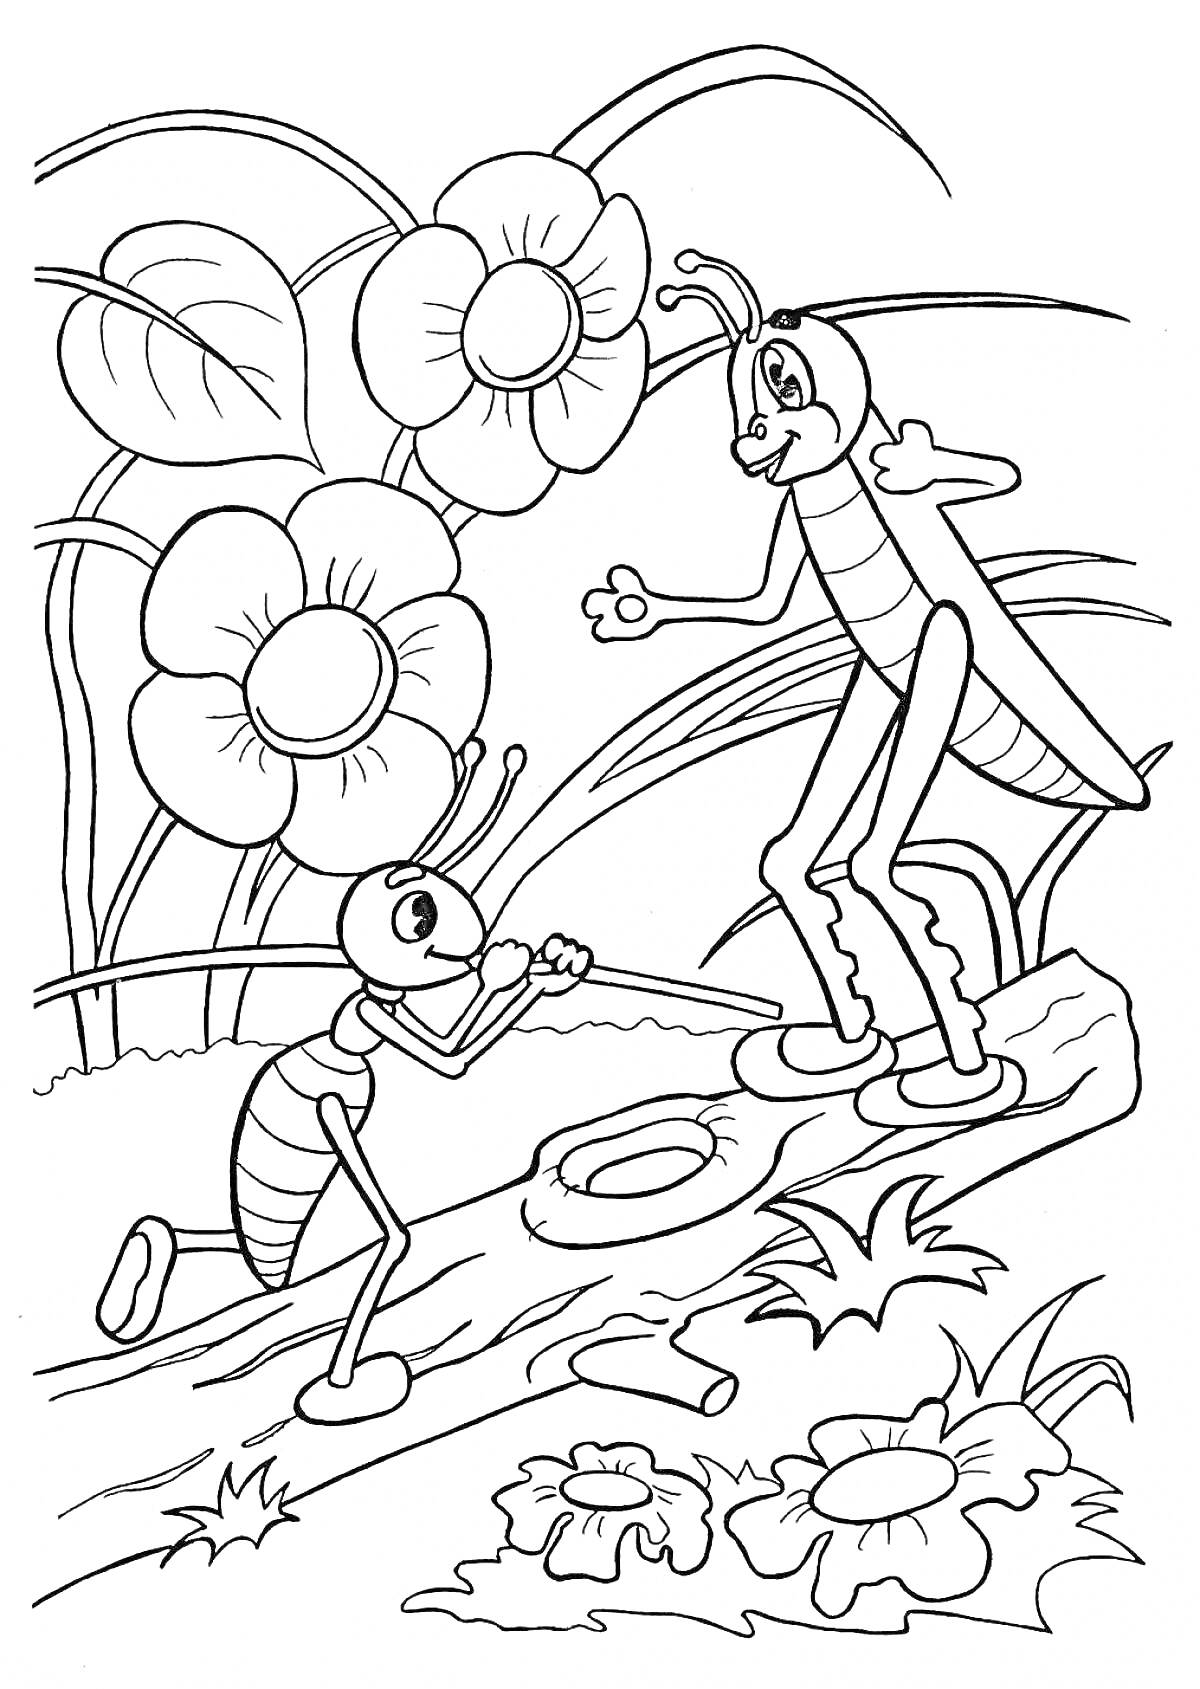 Муравей и кузнечик среди цветов и листьев на бревне